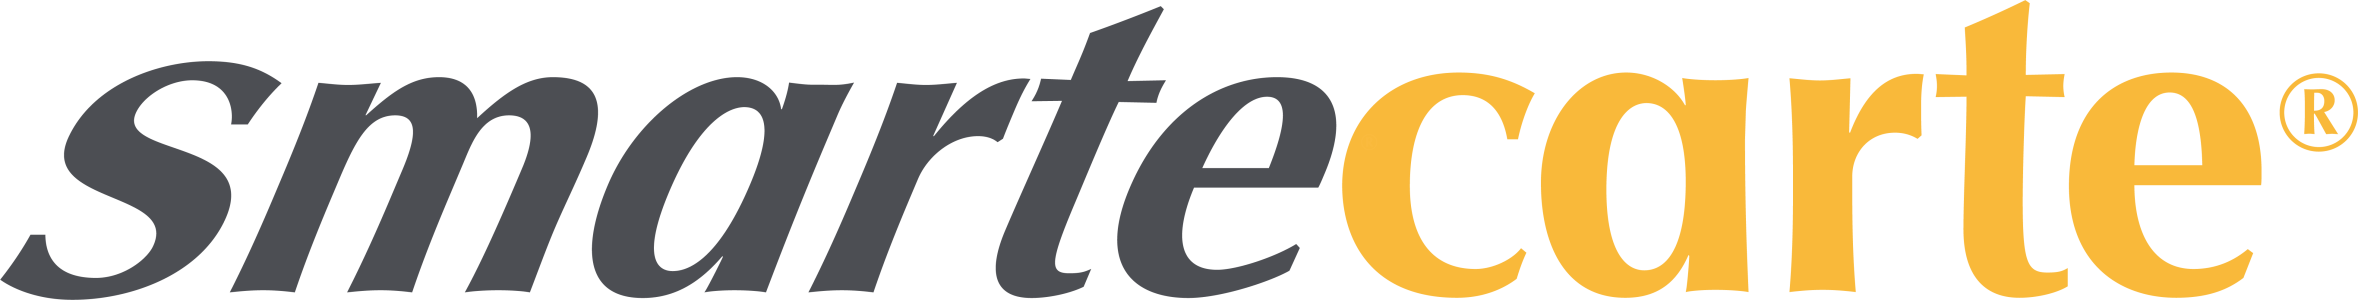 SmarteCarte Logo